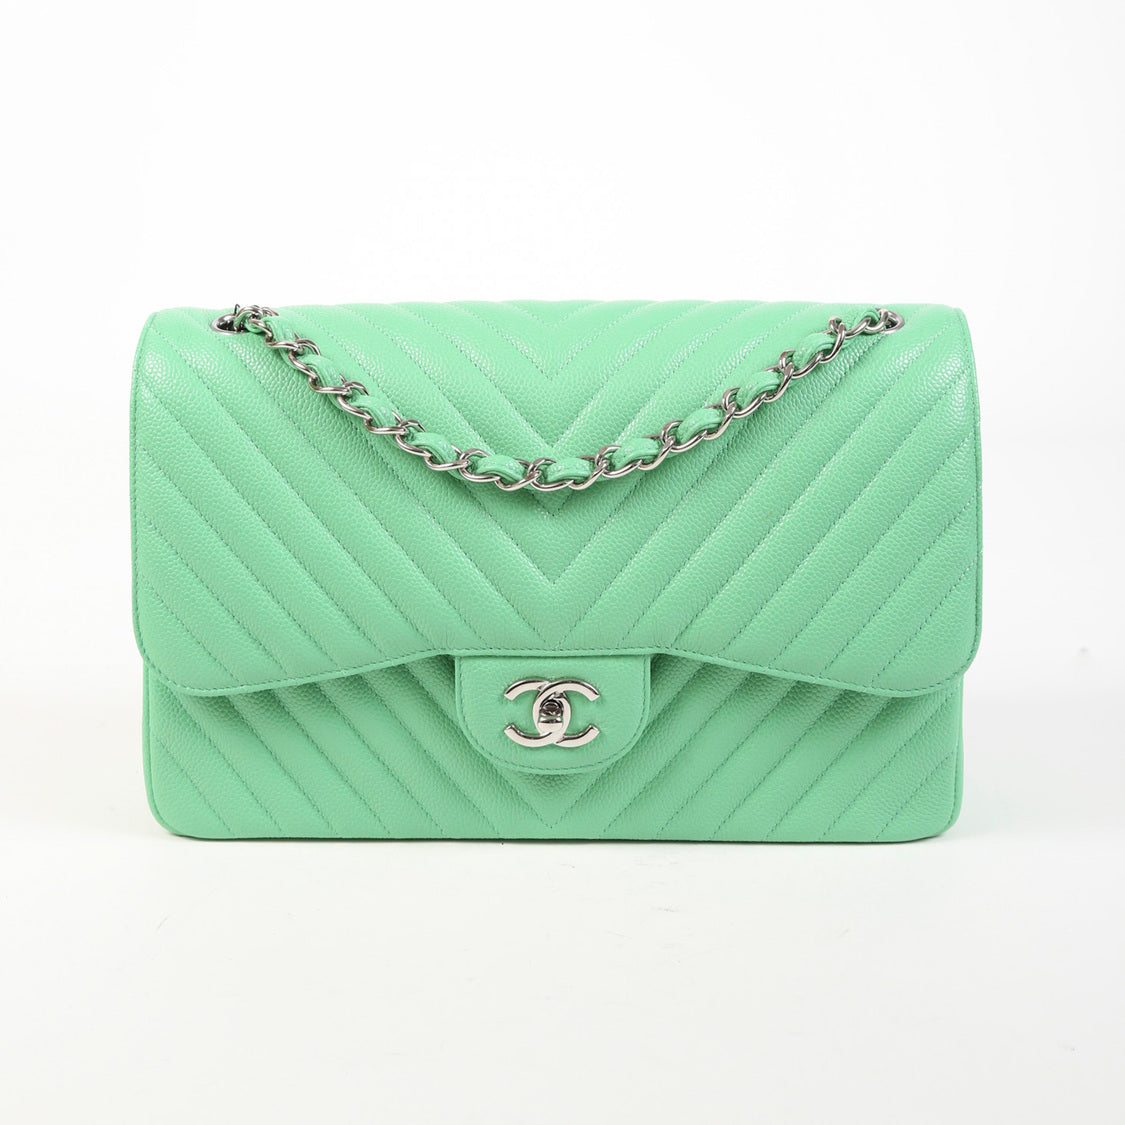 Chanel Green Caviar Envelope Flap Bag Q6B15B0FGB000